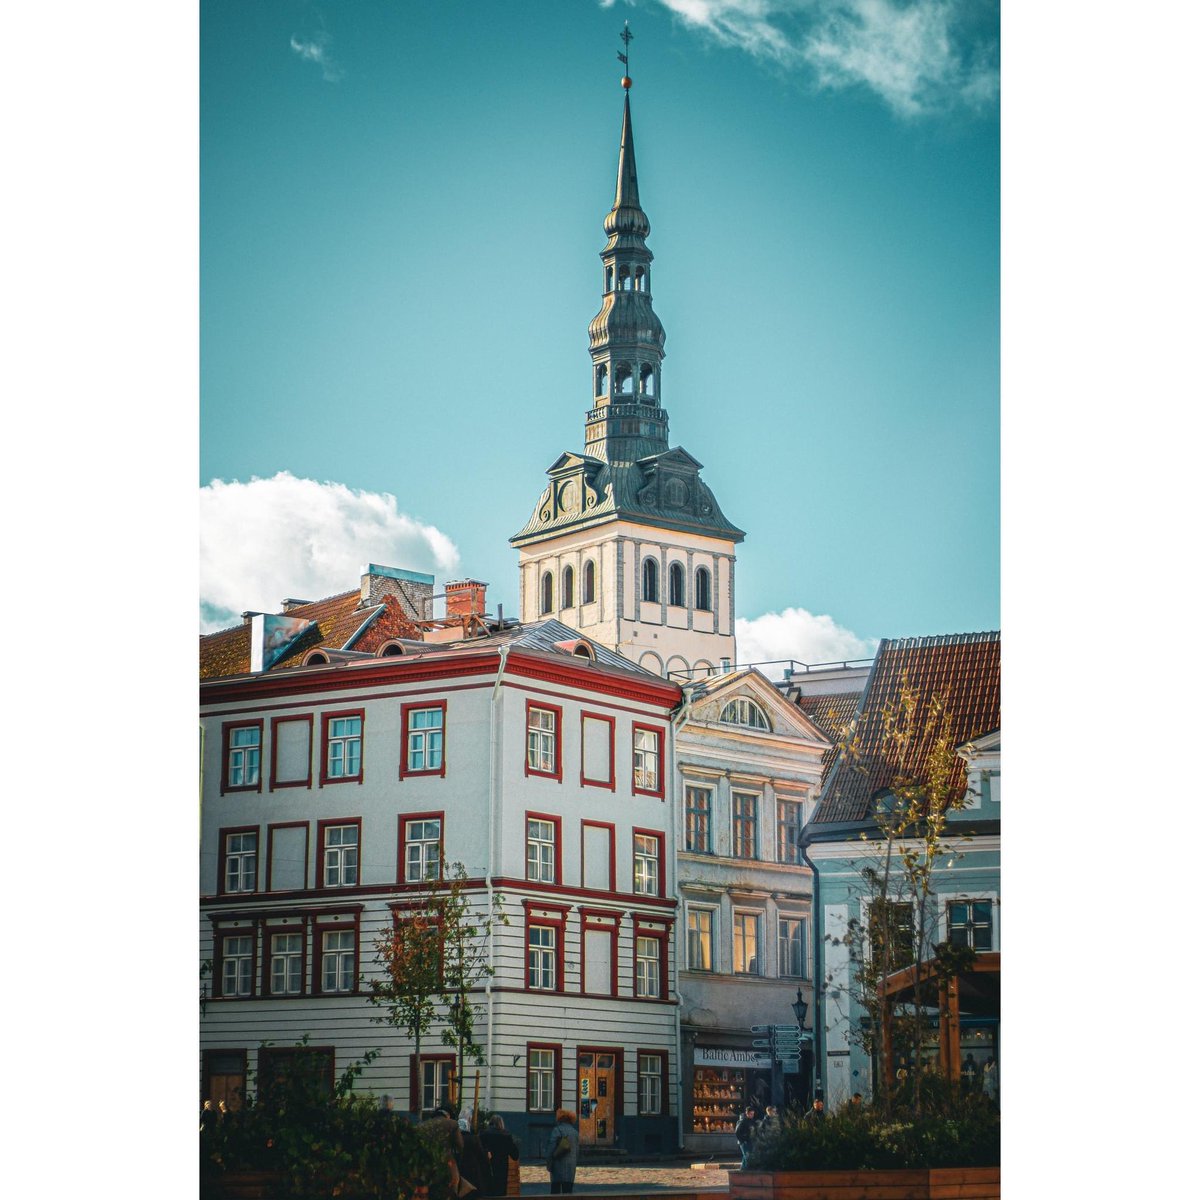 📍Tallinn Estonia 🇪🇪 

#Tallinn #Estonia #photography #streetphotography #travel #trip #travelphotography #travelphotographer #streetphoto #streetphotographer #europe #europetravel #portraitphotography #portrait